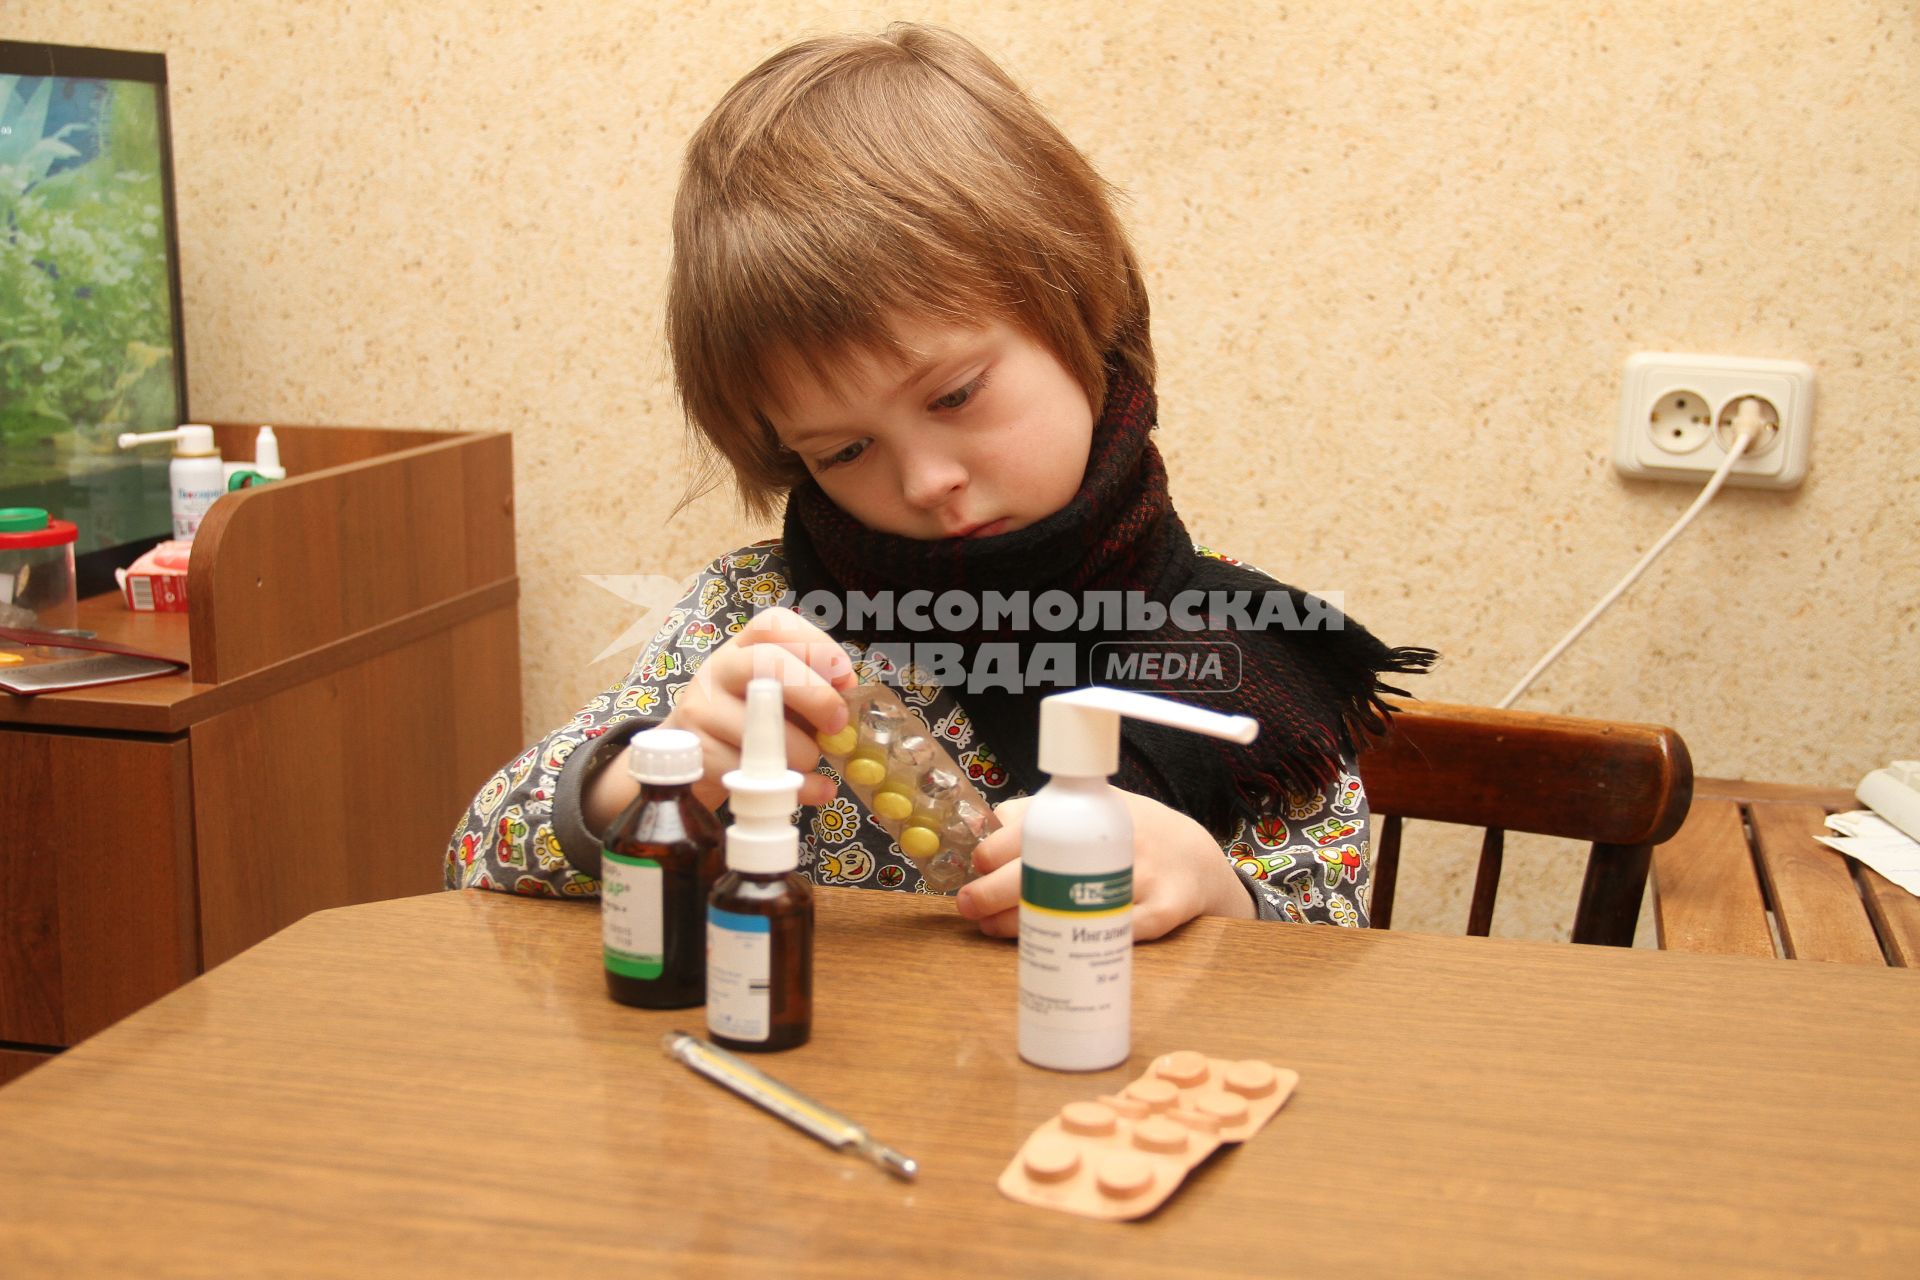 Нижний Новгород. Мальчик с лекарствами.